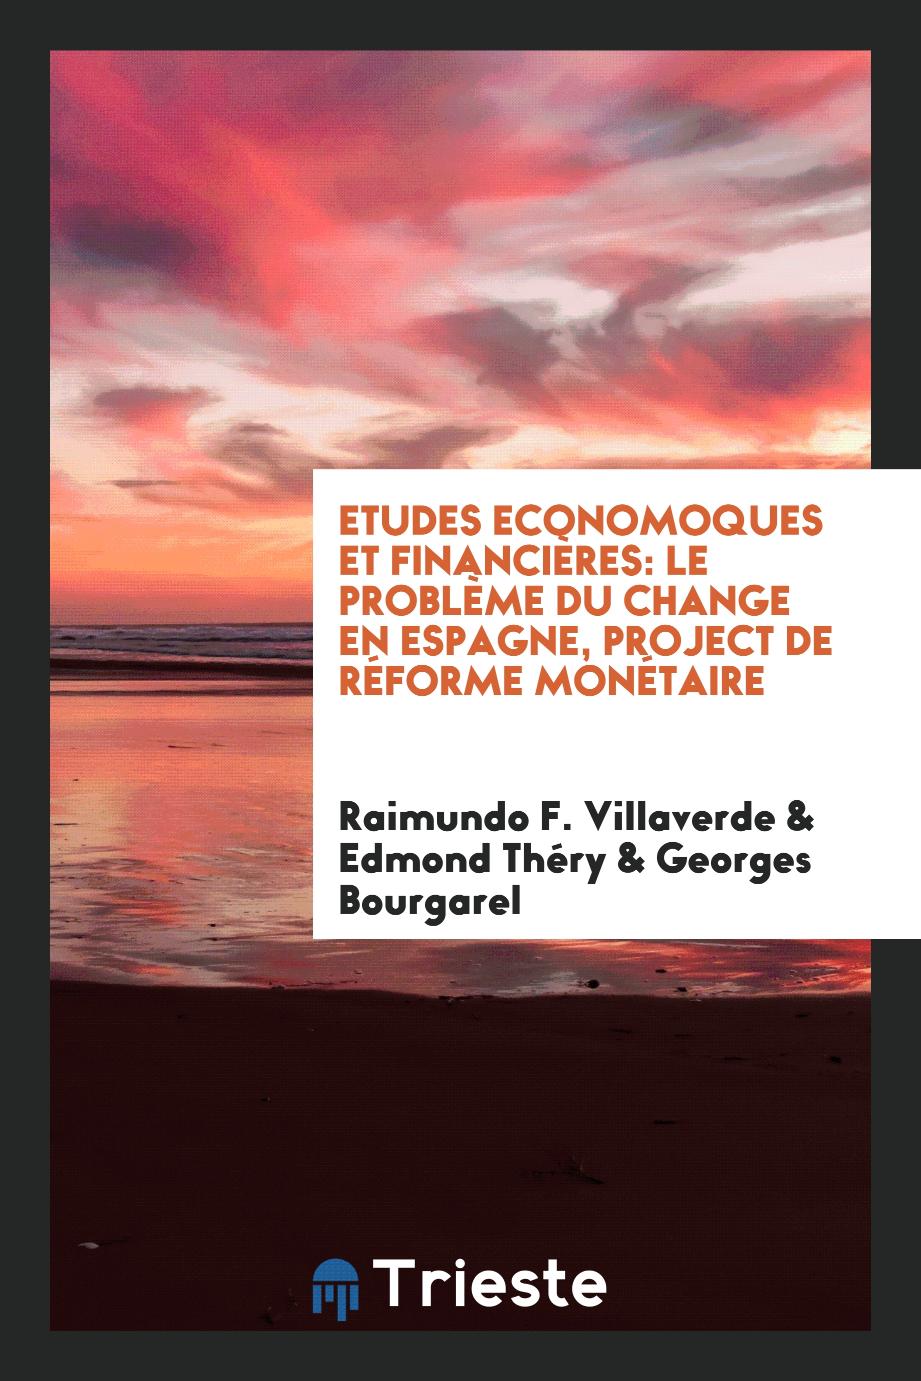 Etudes Economoques et Financières: Le Problème Du Change En Espagne, Project De Réforme Monétaire